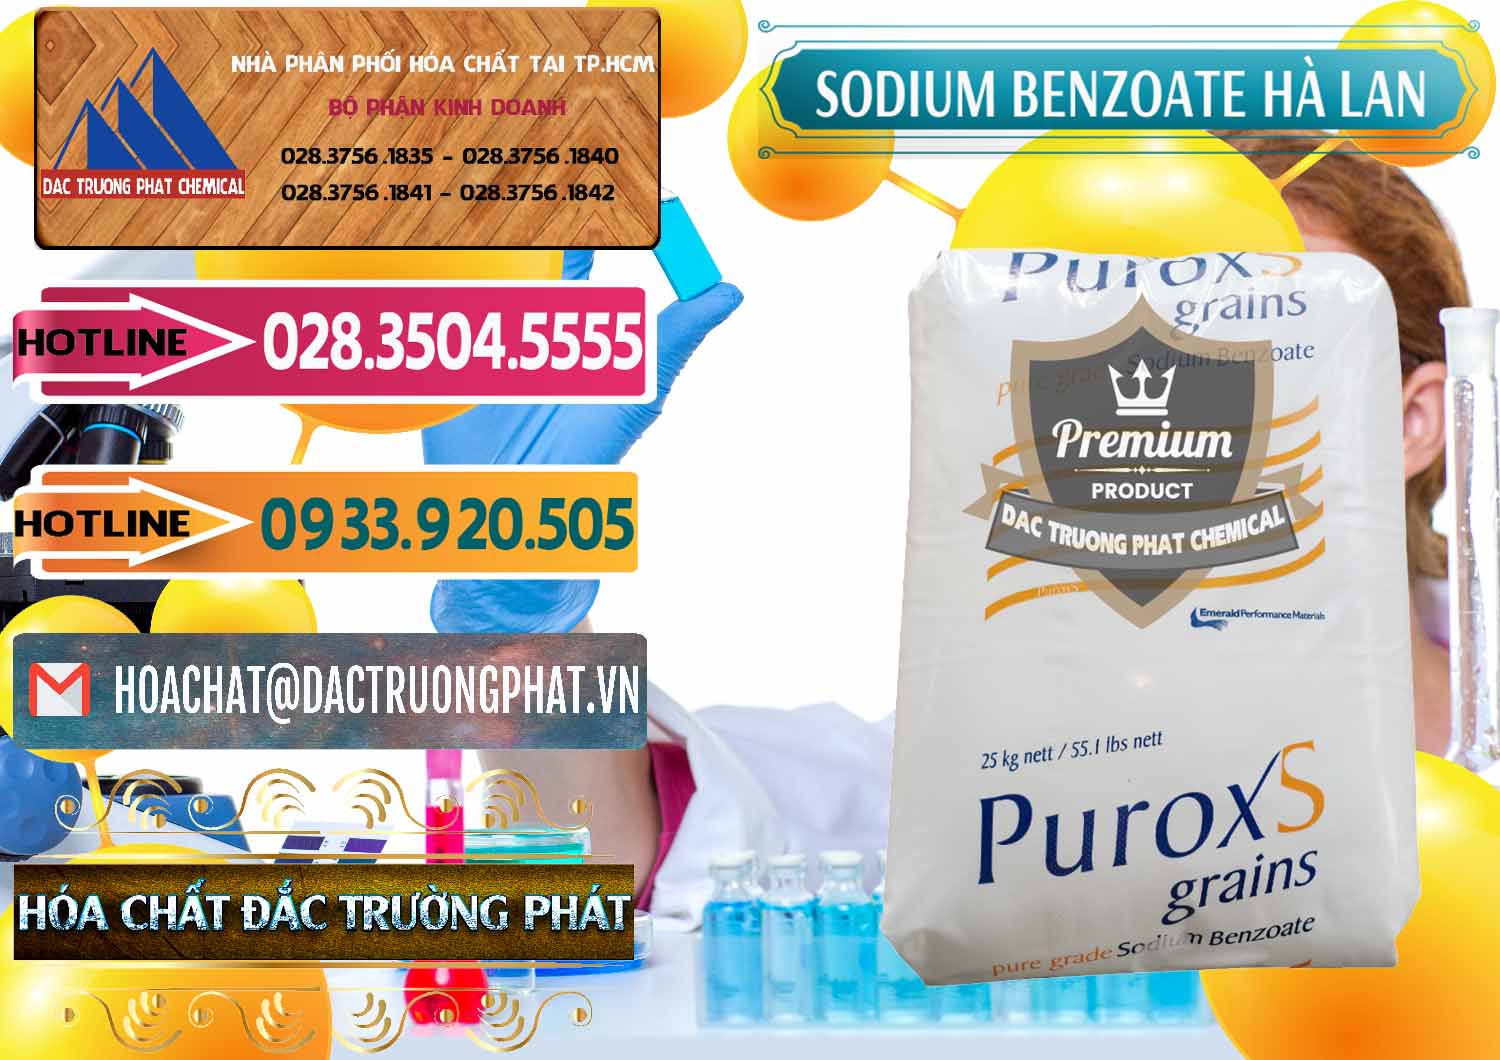 Công ty bán ( phân phối ) Sodium Benzoate - Mốc Bột Puroxs Hà Lan Netherlands - 0467 - Bán và cung cấp hóa chất tại TP.HCM - dactruongphat.vn